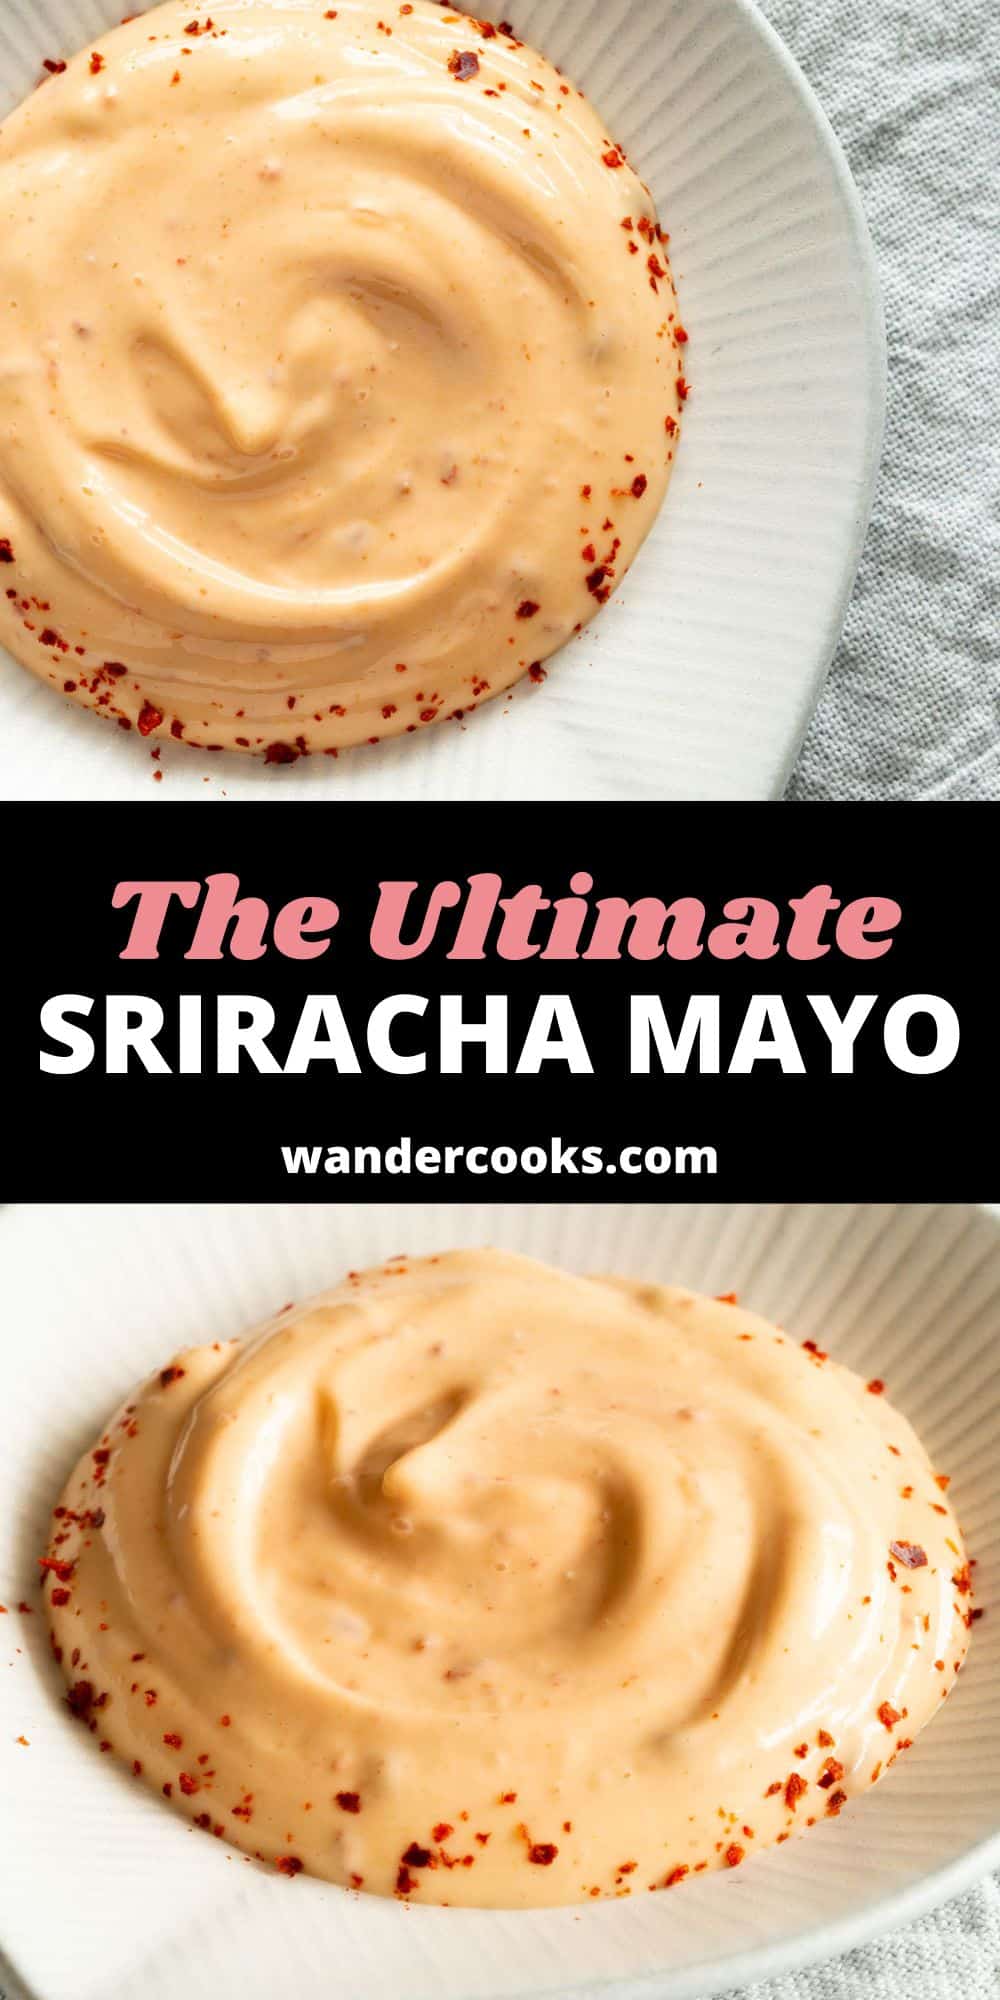 The Ultimate Sriracha Mayo